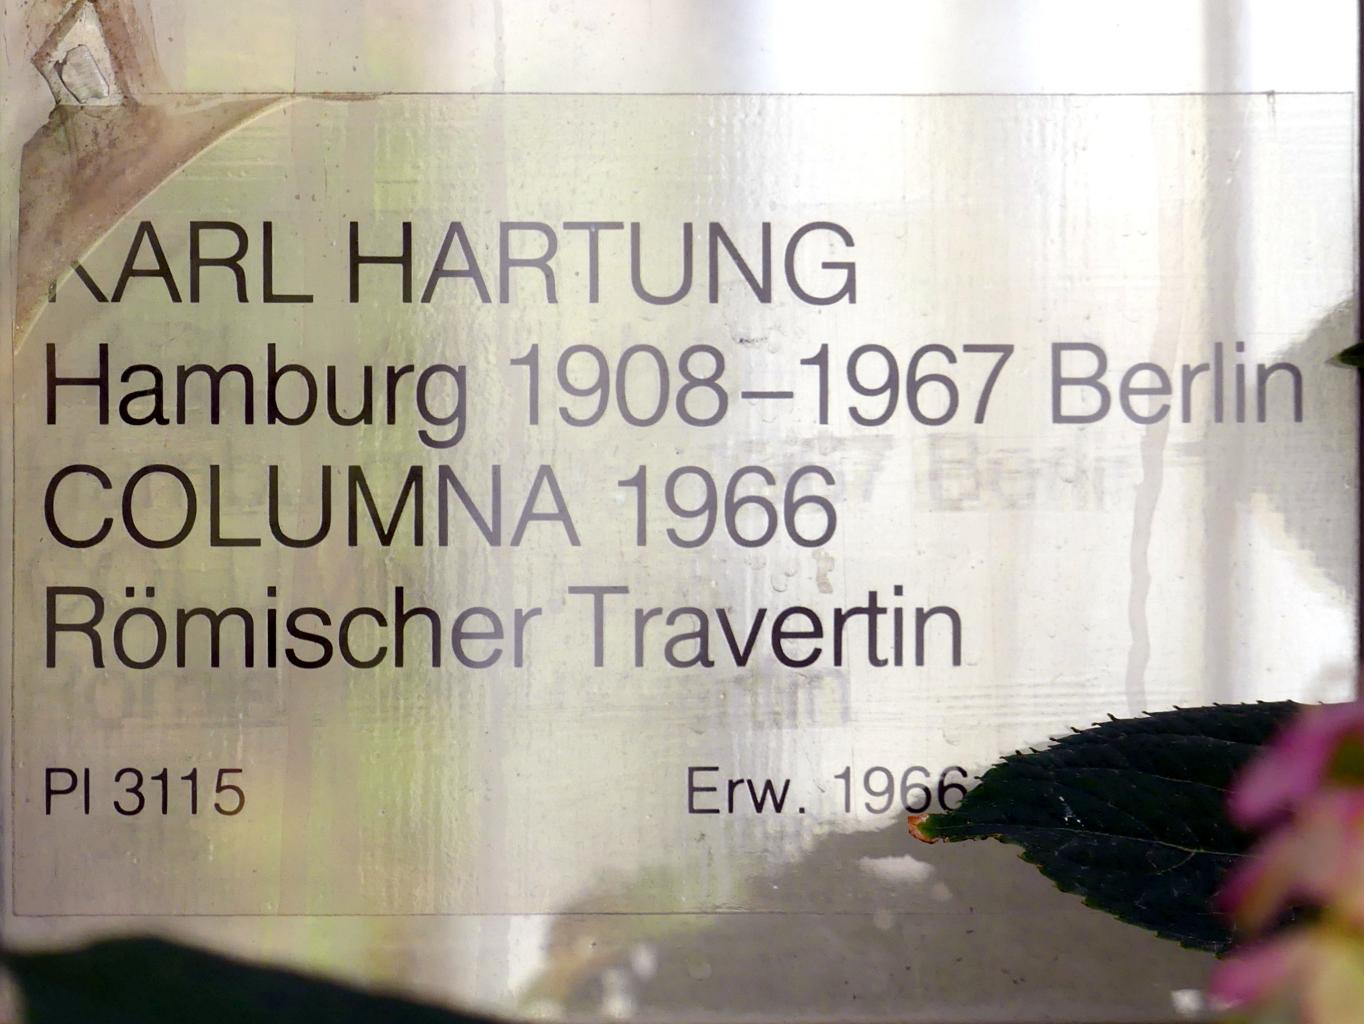 Karl Hartung (1950–1966), Columna, Nürnberg, Germanisches Nationalmuseum, Kleiner Klosterhof, 1966, Bild 8/8